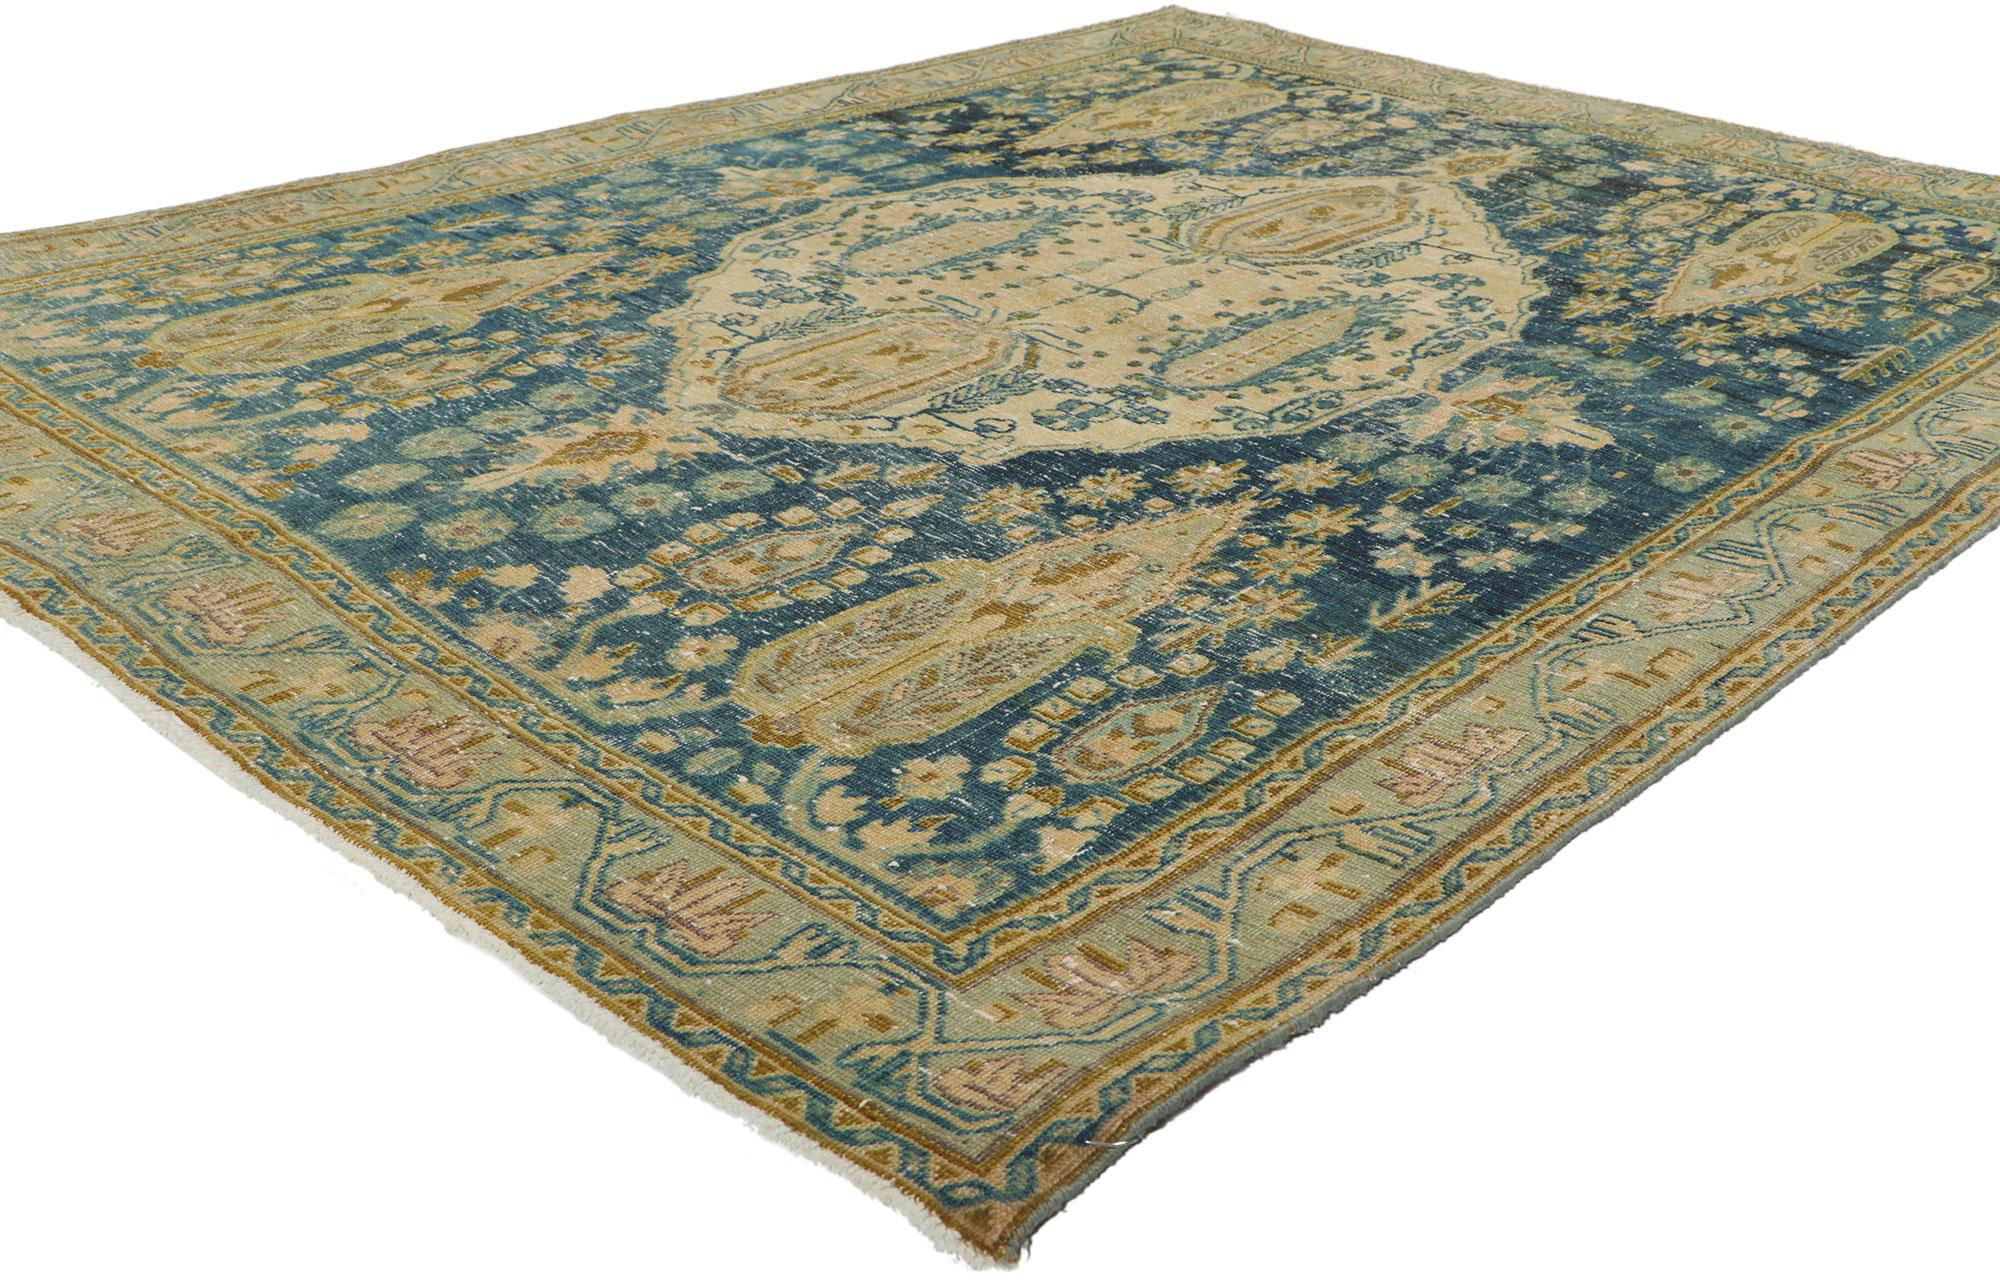 53046 Tapis persan vintage Afshar, 04'09 x 06'06.
Avec son apparence amoureusement usée par le temps et son design de cyprès, ce tapis persan antique en laine nouée à la main et vieillie charme avec aisance et incarne magnifiquement le style Manoir